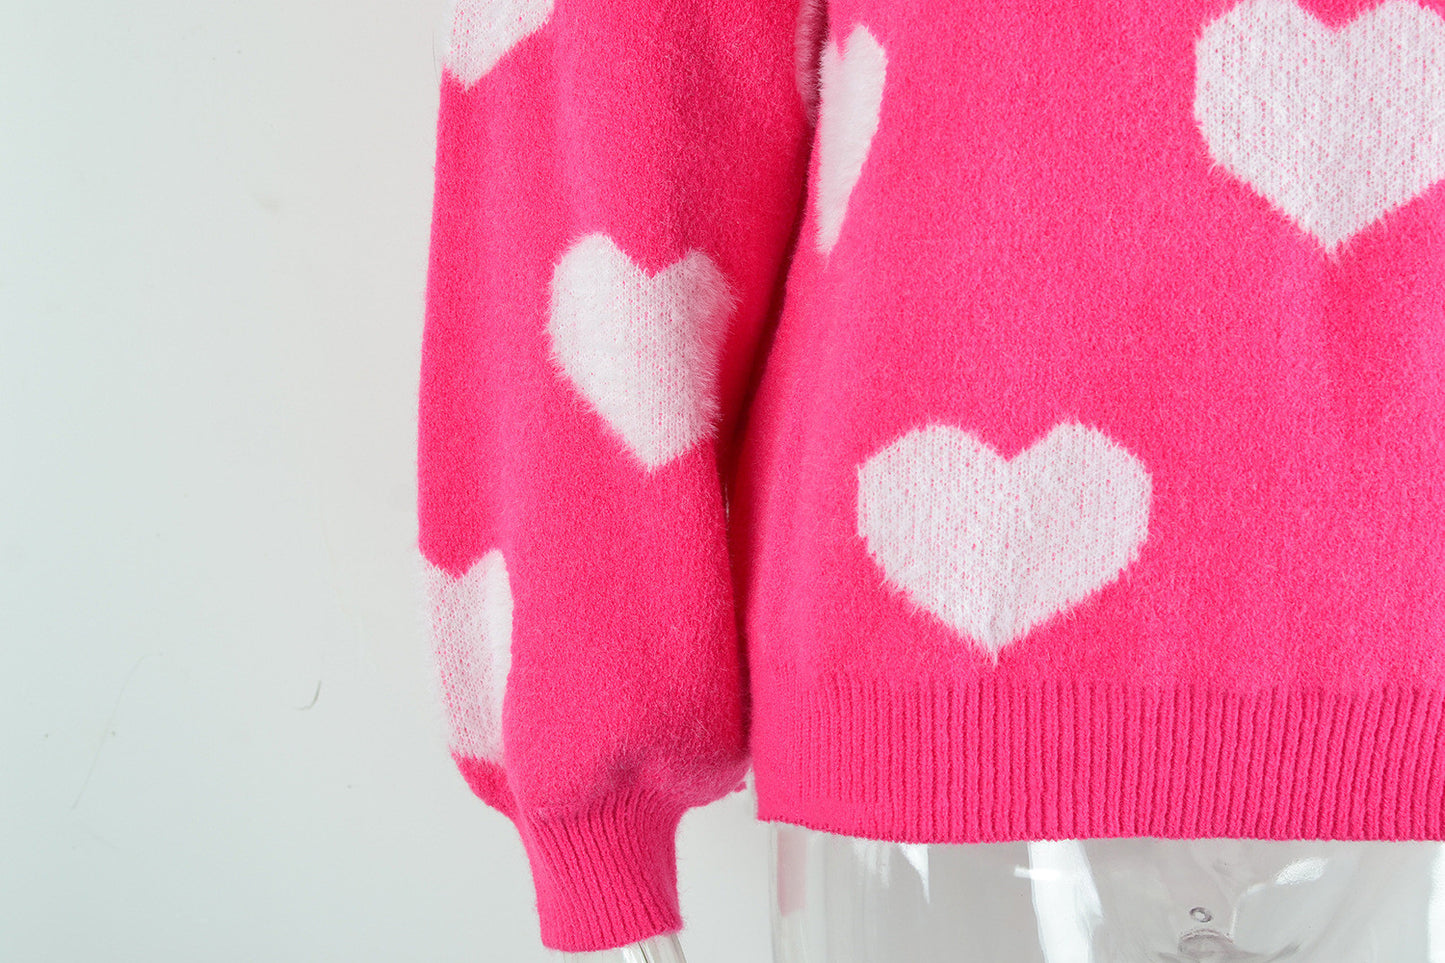 Women's Sweater Love Valentine's Day Round Neck Pullover